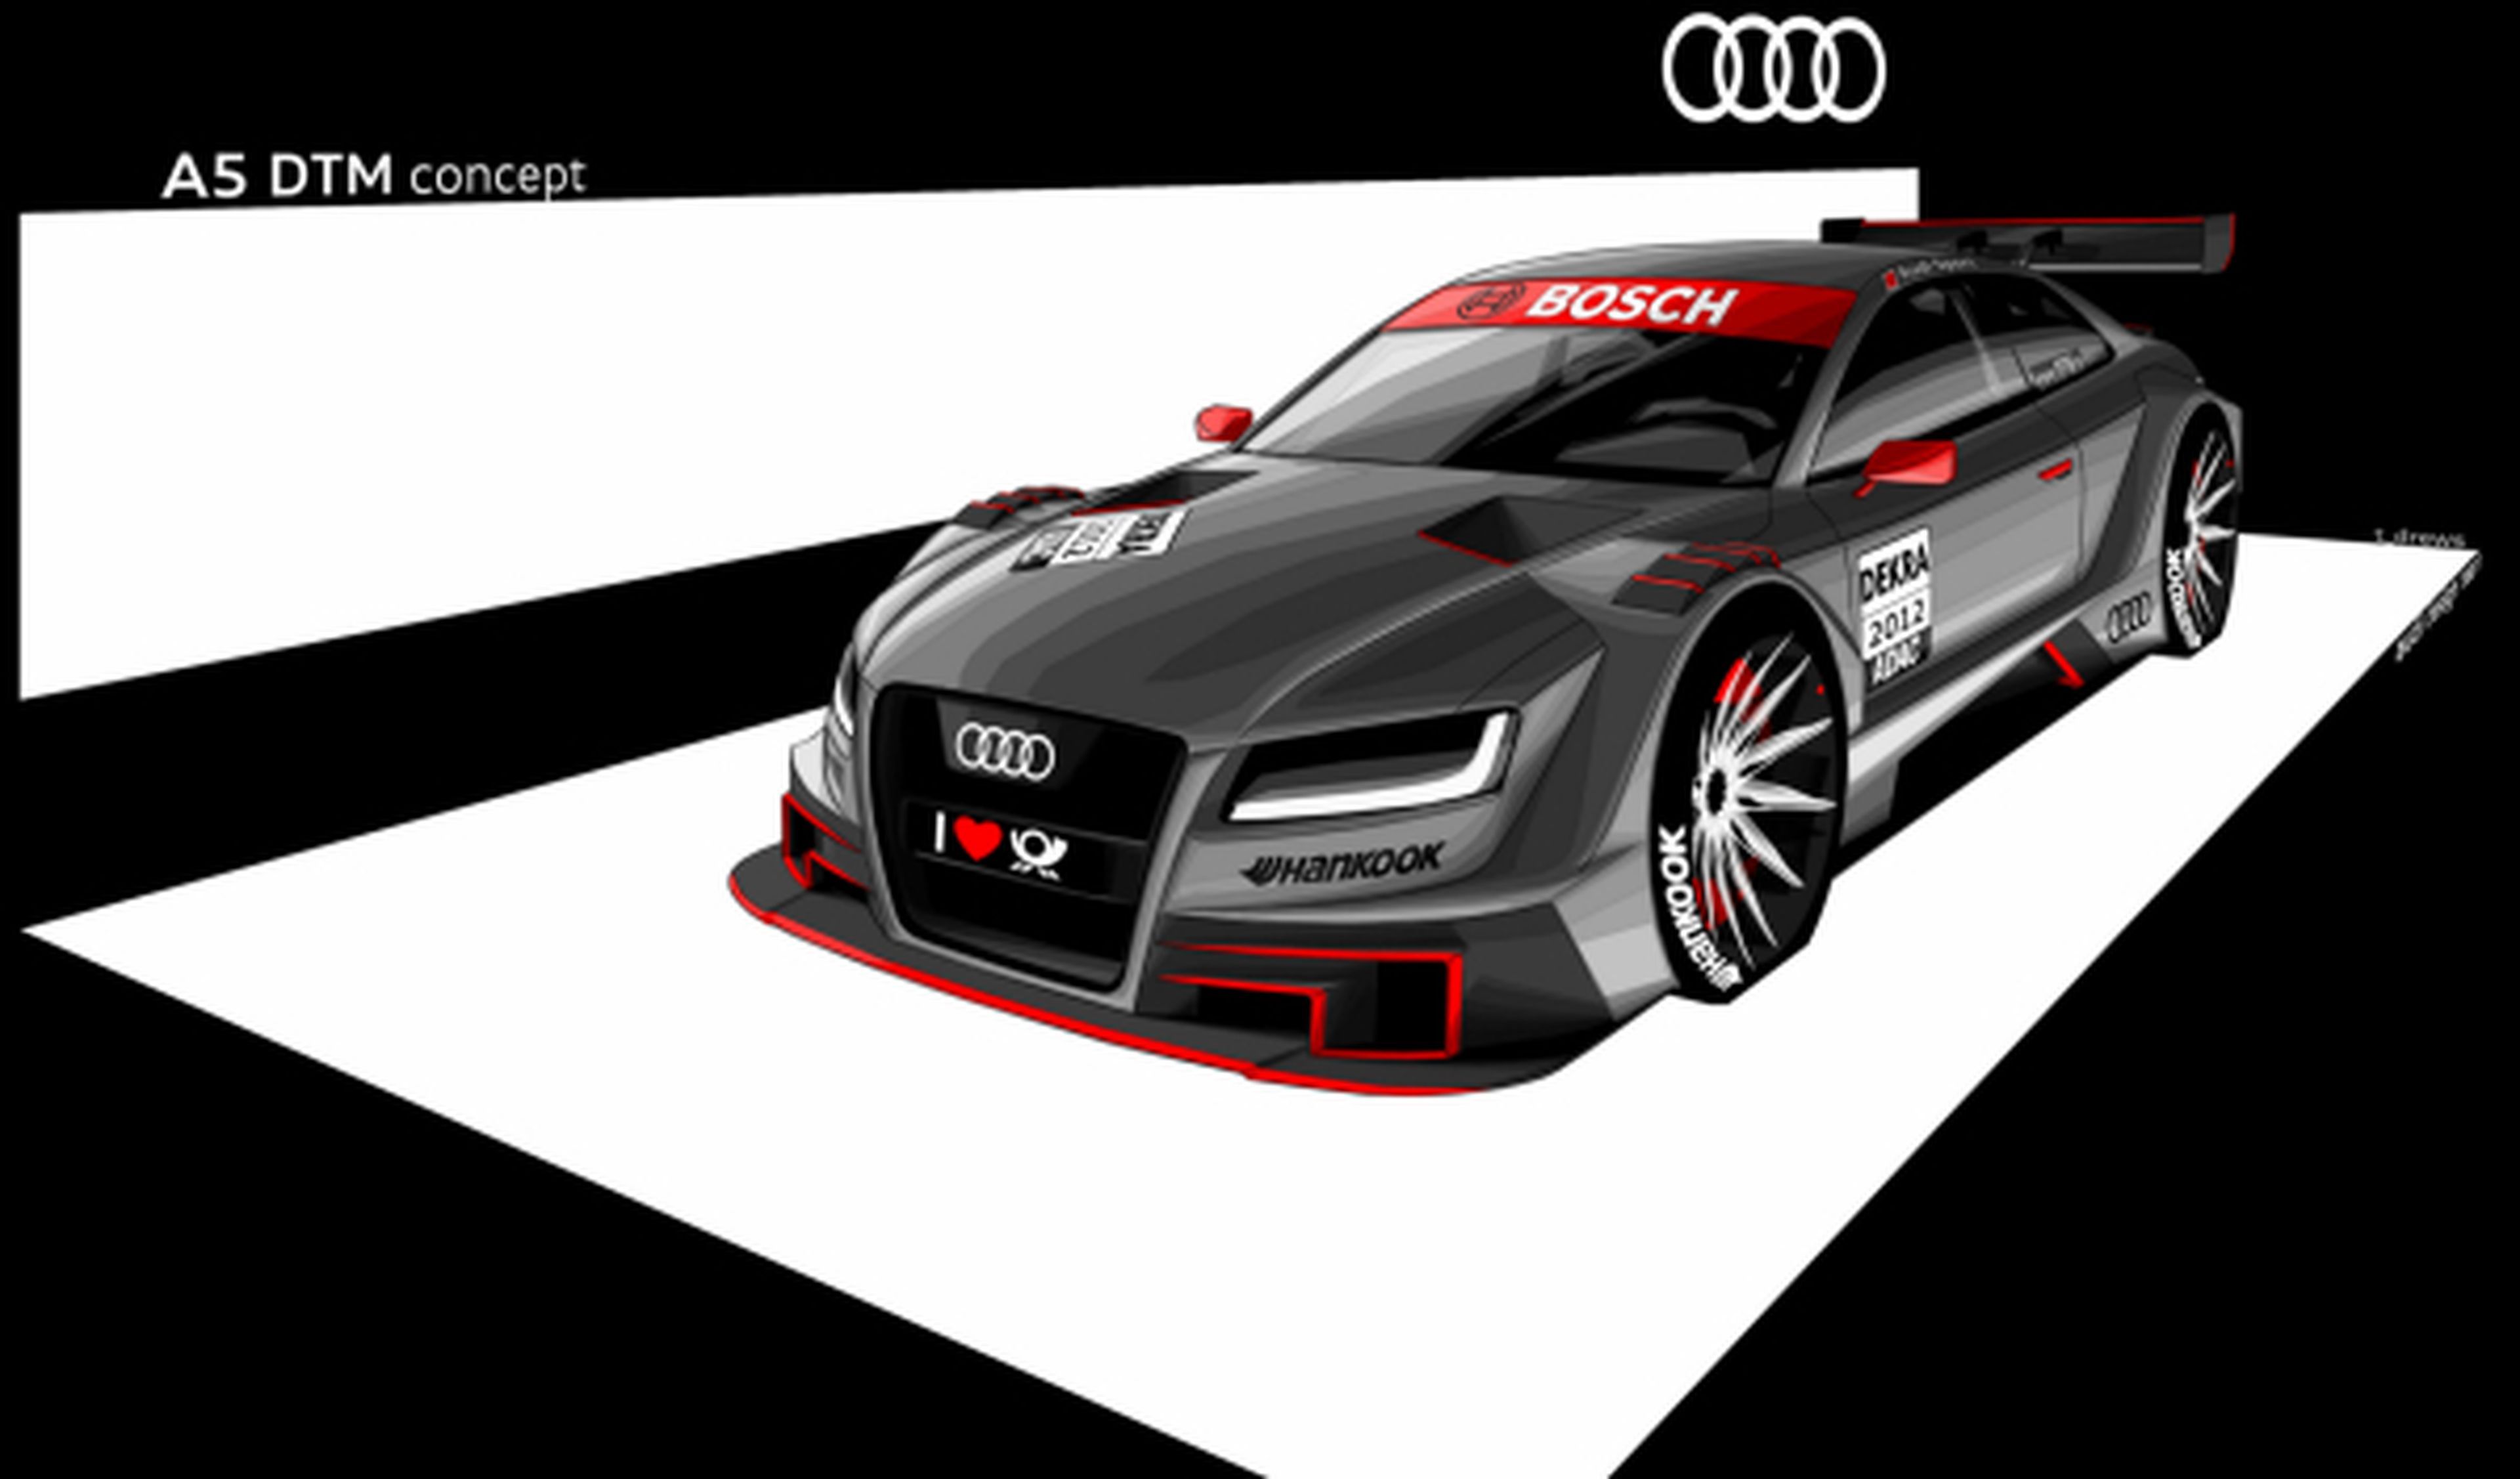 Audi muestra el A5 DTM 2012